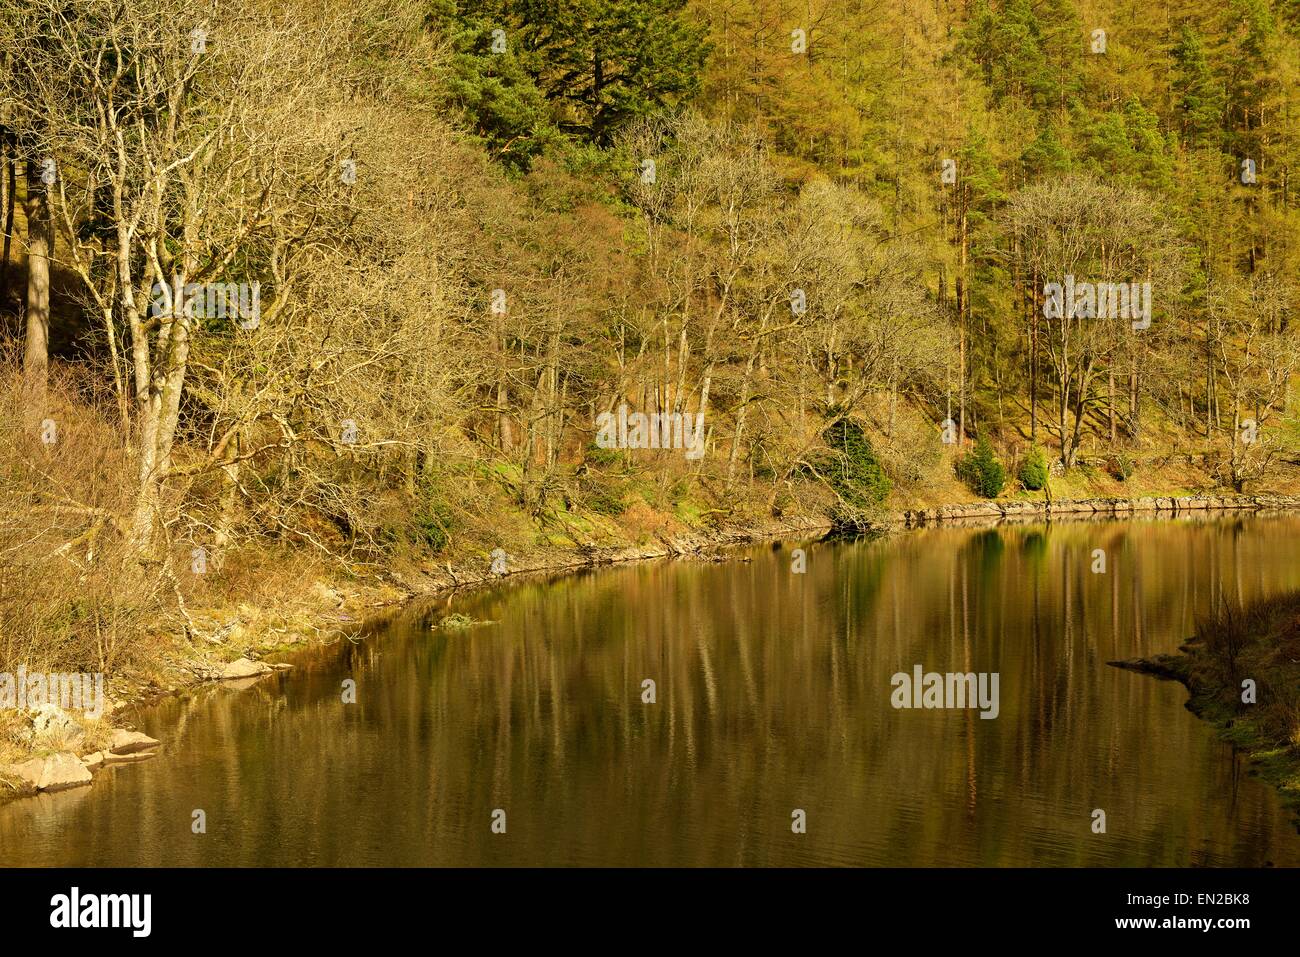 Une image couleur d'arbres se reflétant dans l'eau encore de l'elan river Banque D'Images